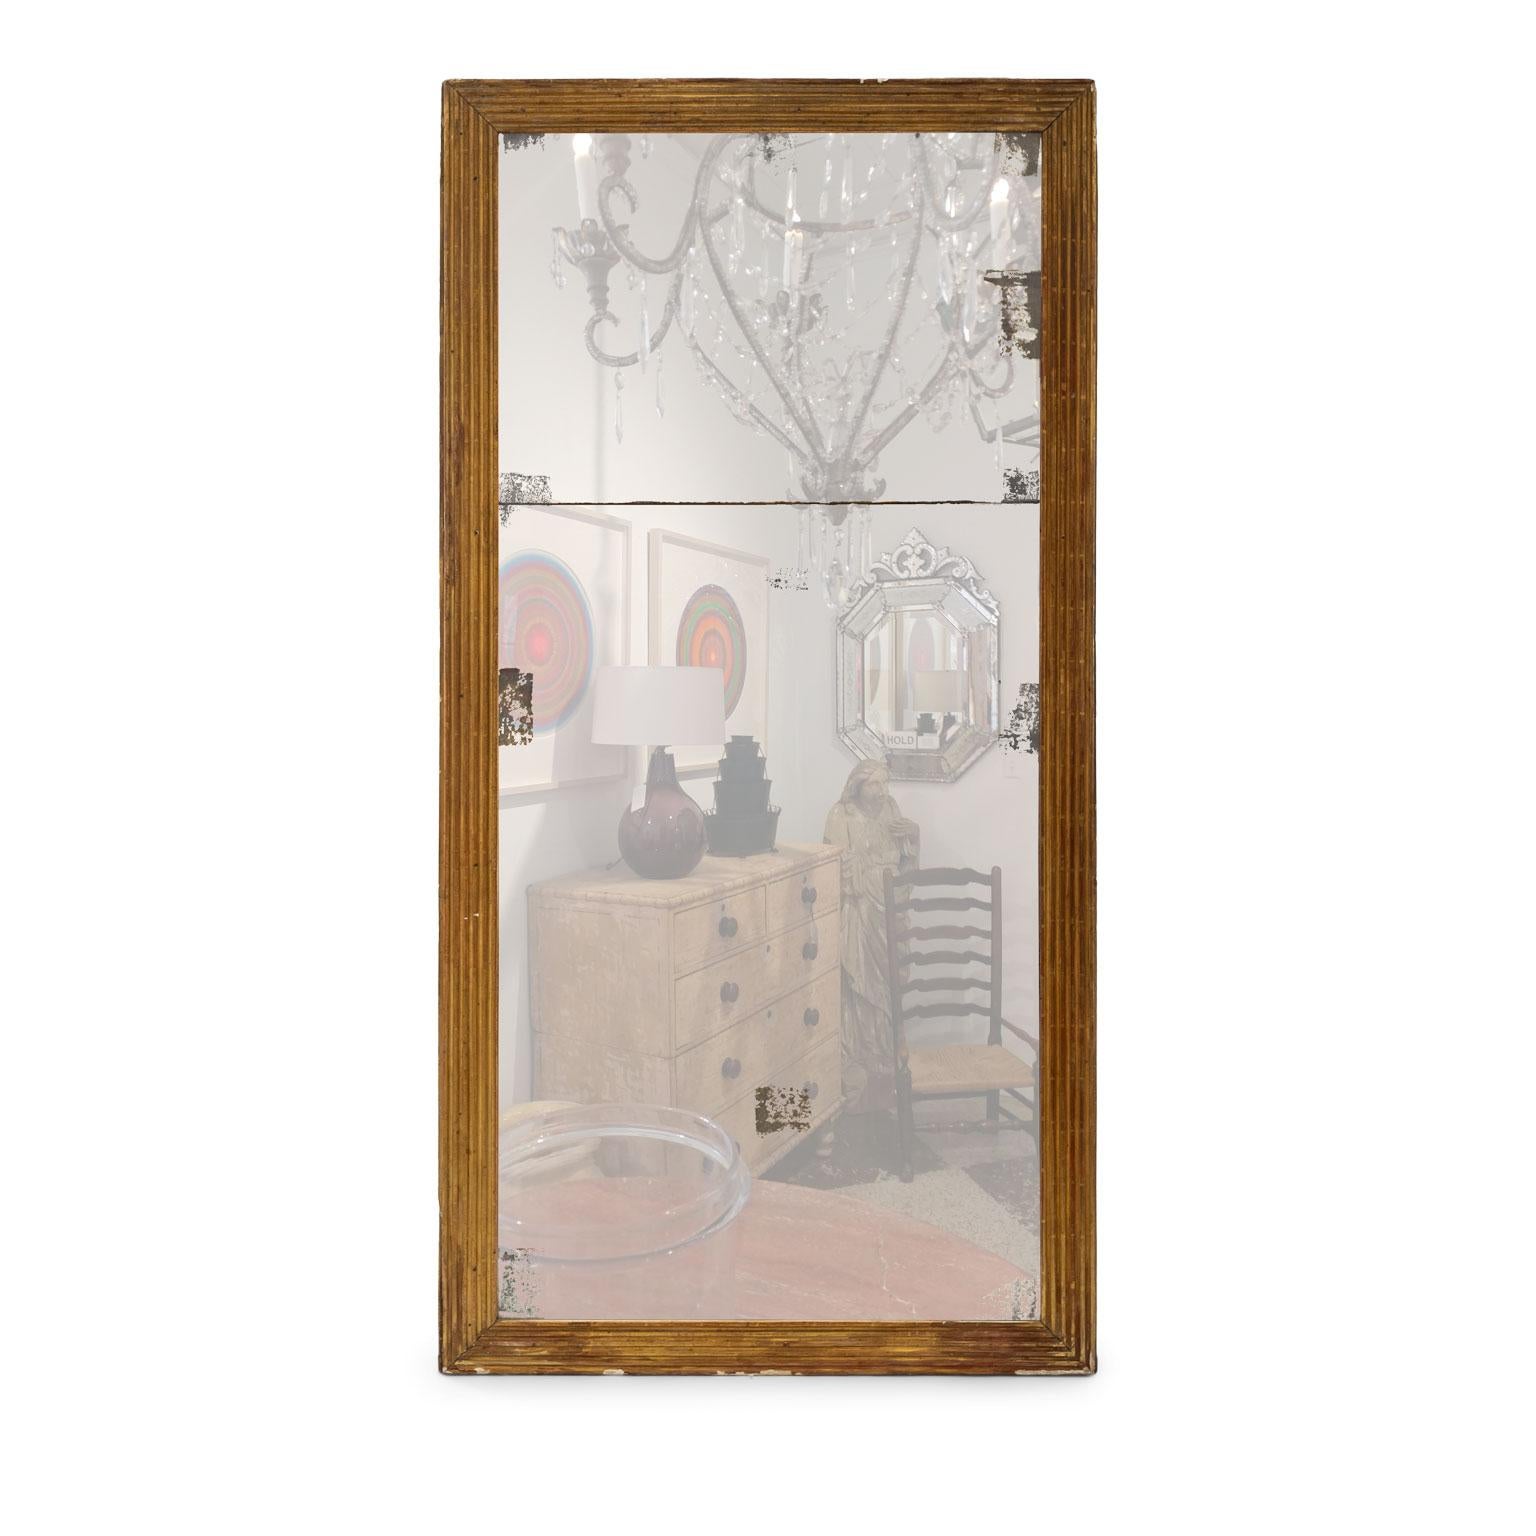 Encadrement de miroir en bois doré cannelé du début du 19e siècle entourant une plaque de séparation en miroir au mercure d'origine. Le verre miroir présente des pertes au revers argenté et de la poussière de diamant sur les bords.

Note : Les